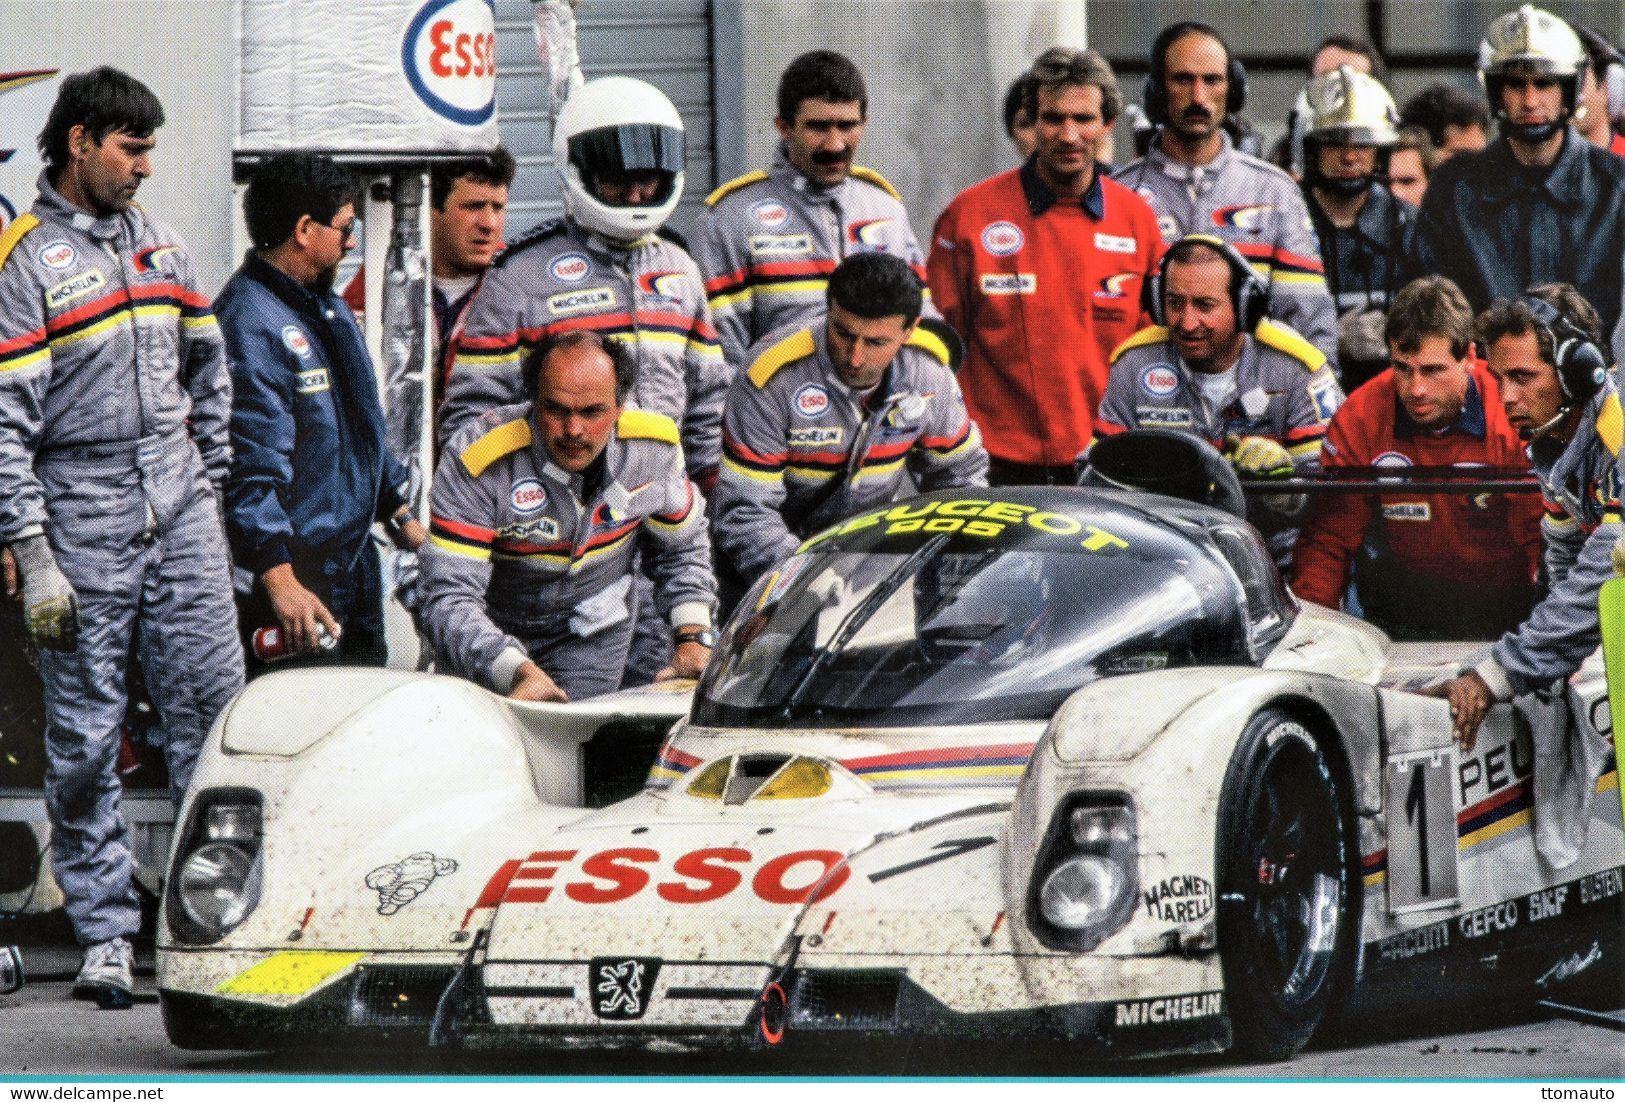 Peugeot 905 Evo 1  - Pilote: Yannick Dalmas  (Concurrent Francaise Du Mans 1992) - PHOTO 15x10cms - Le Mans